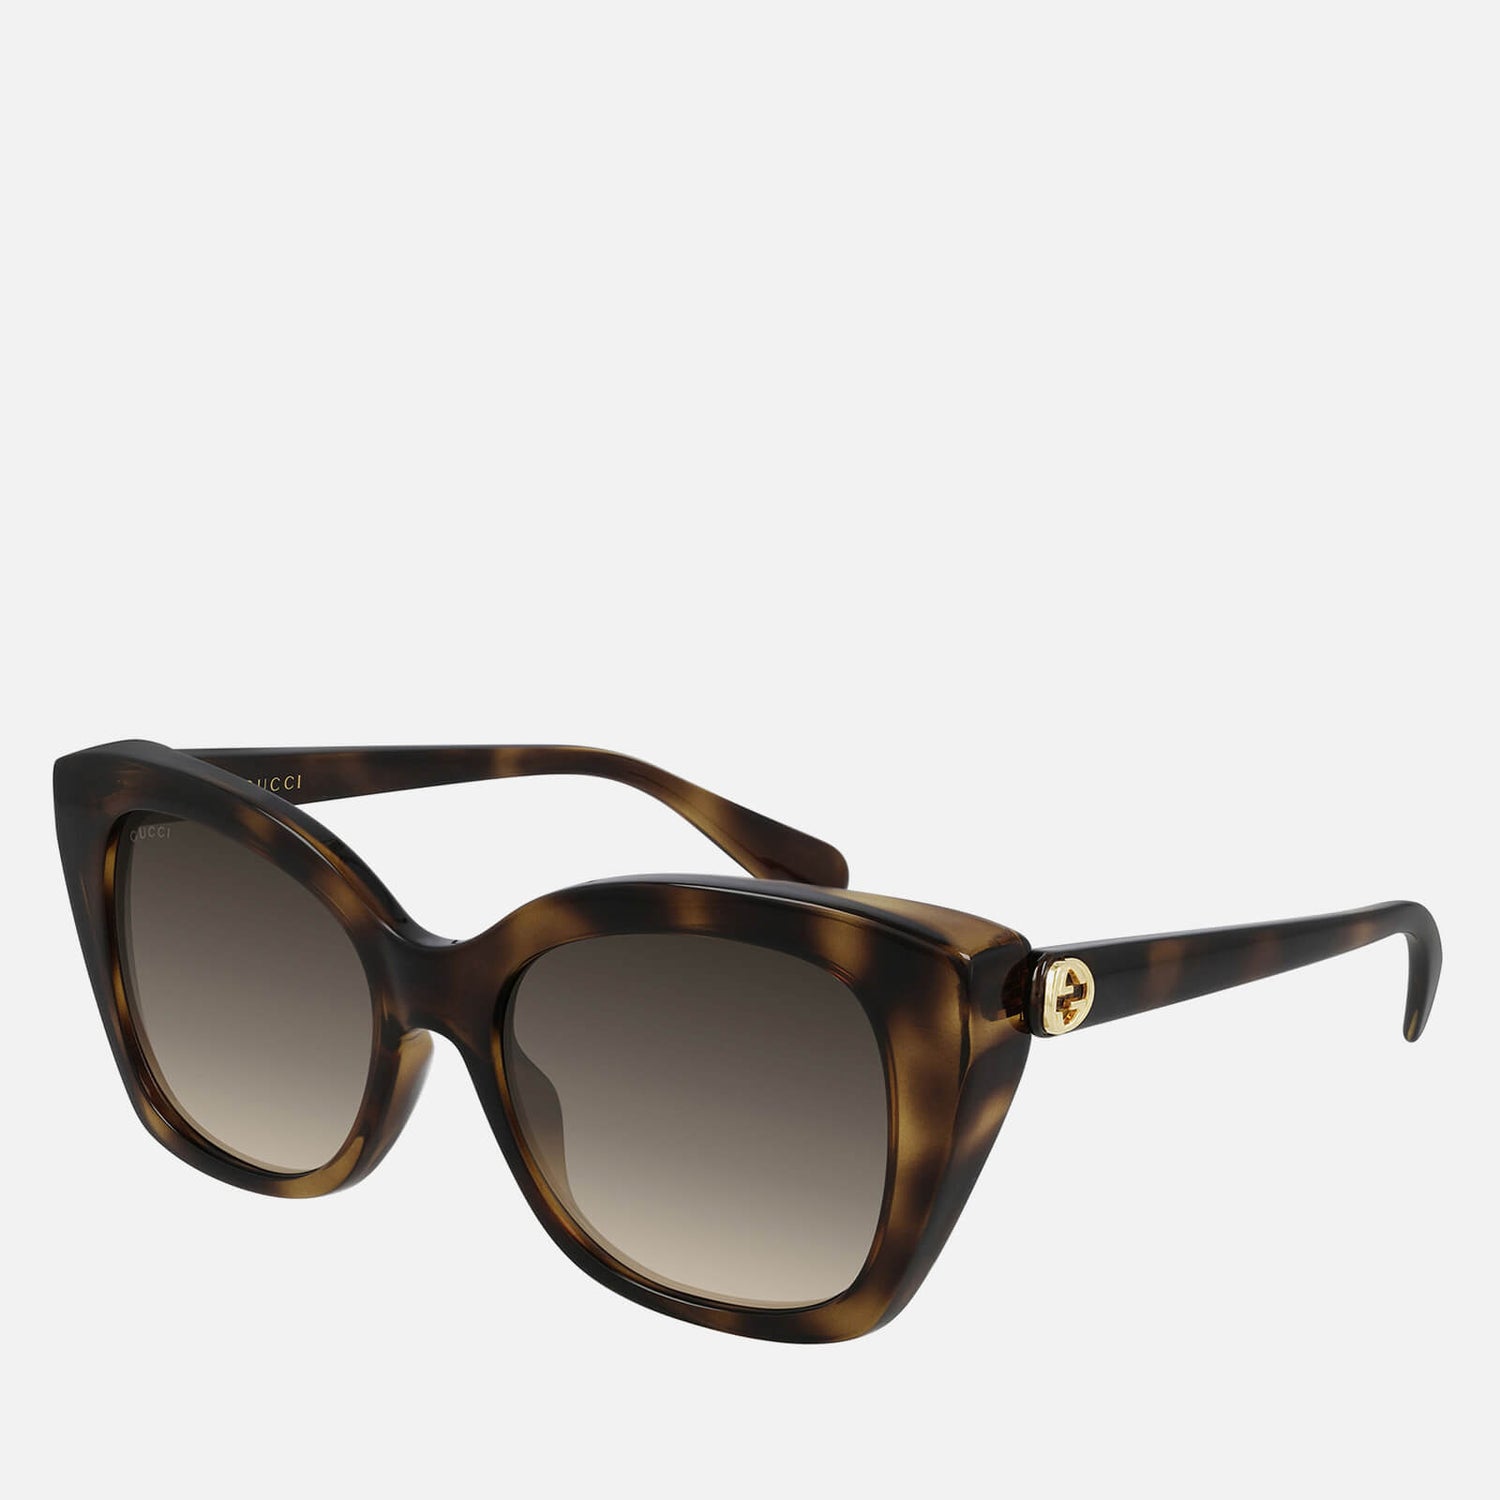 Gucci Women's Gradient Cat Eye Acetate Sunglasses - Havana/Havana/Brown